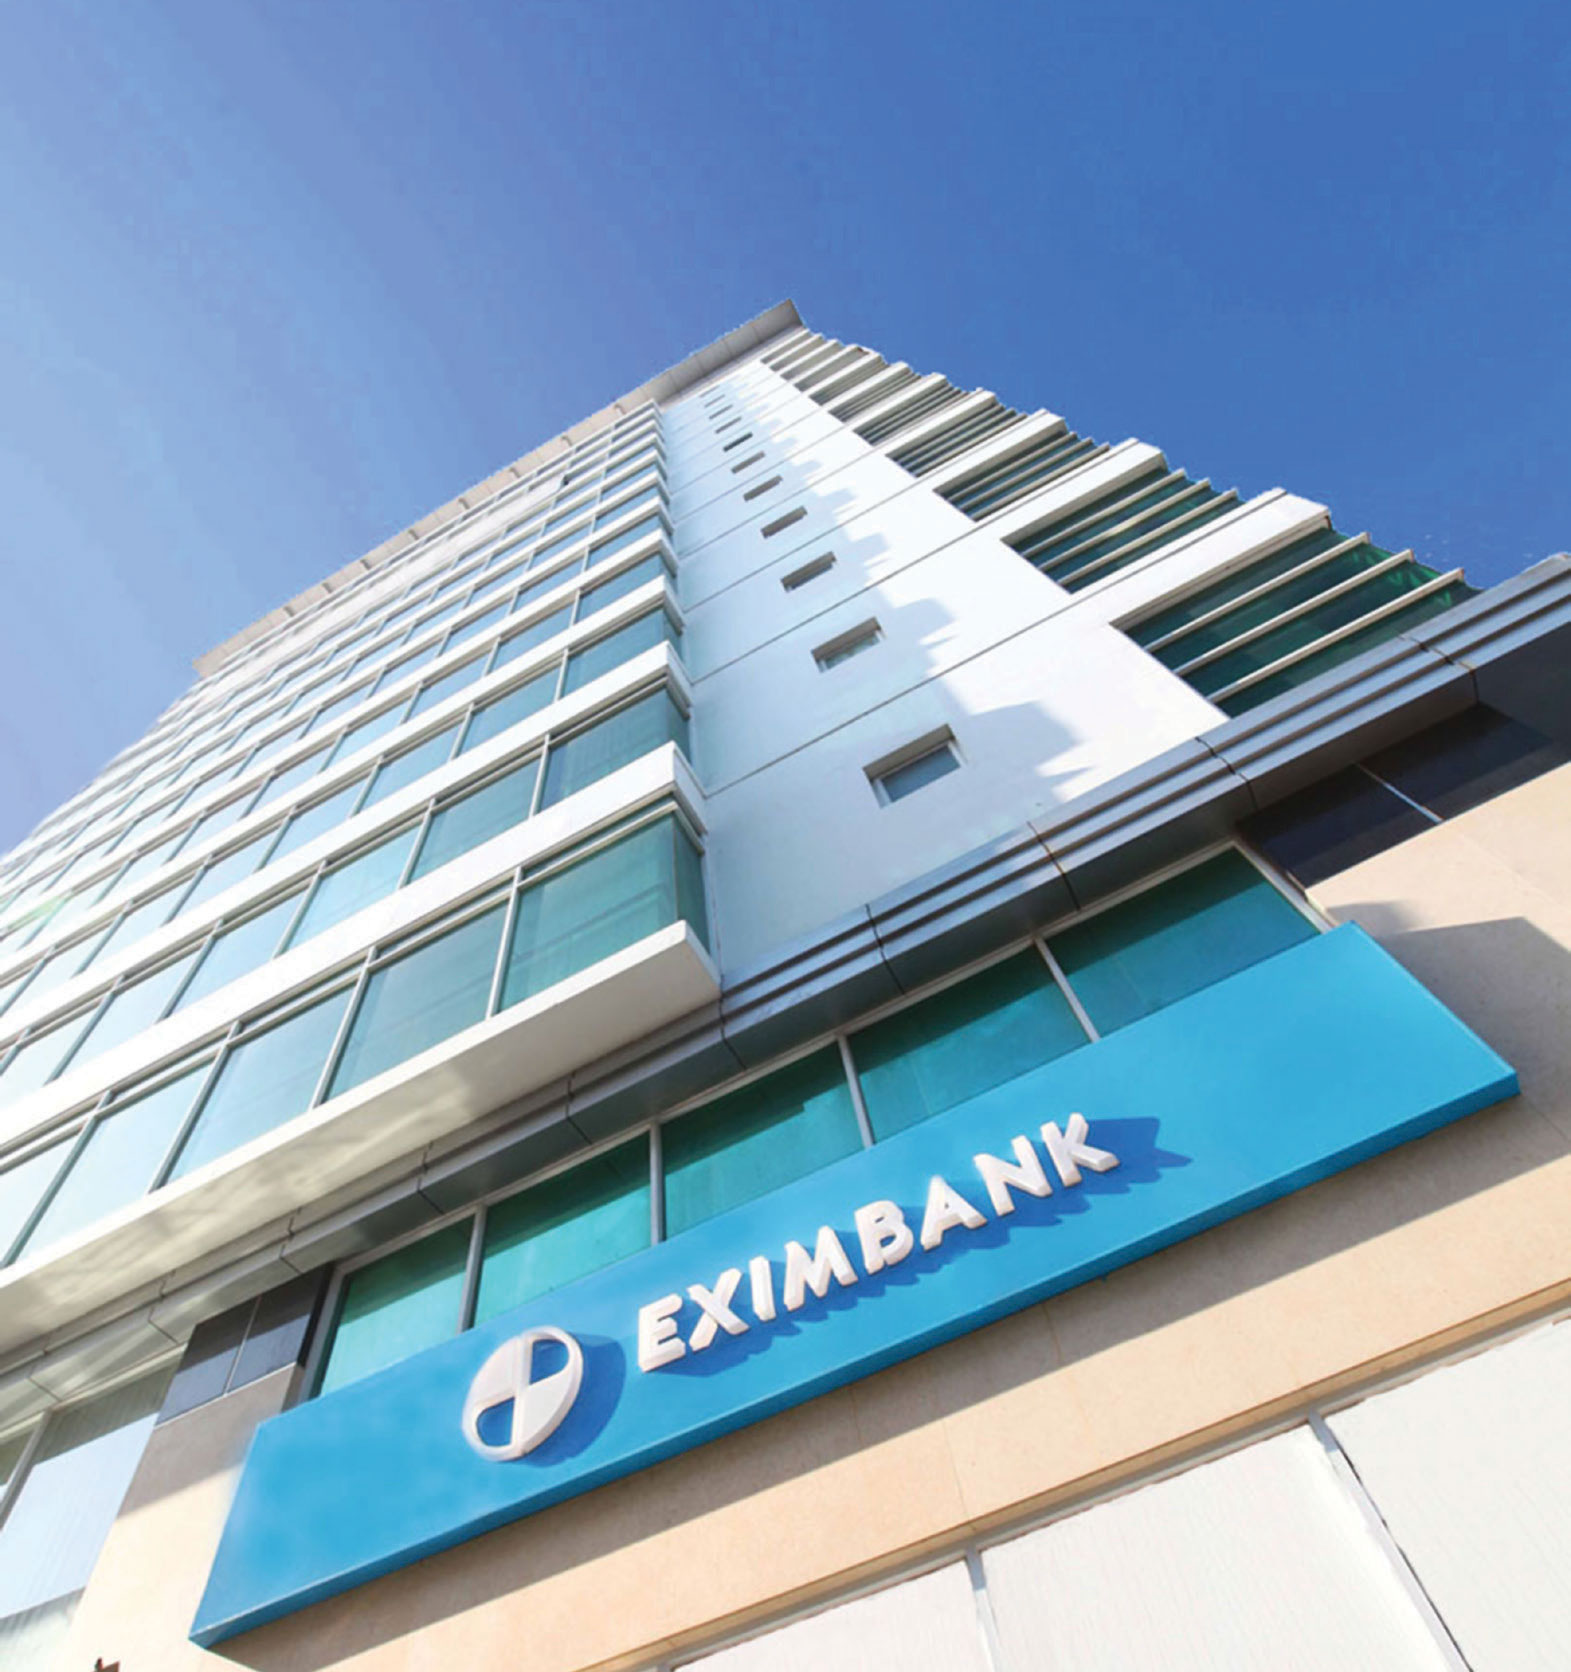 Eximbank: 2019 là năm tăng tốc tái cơ cấu